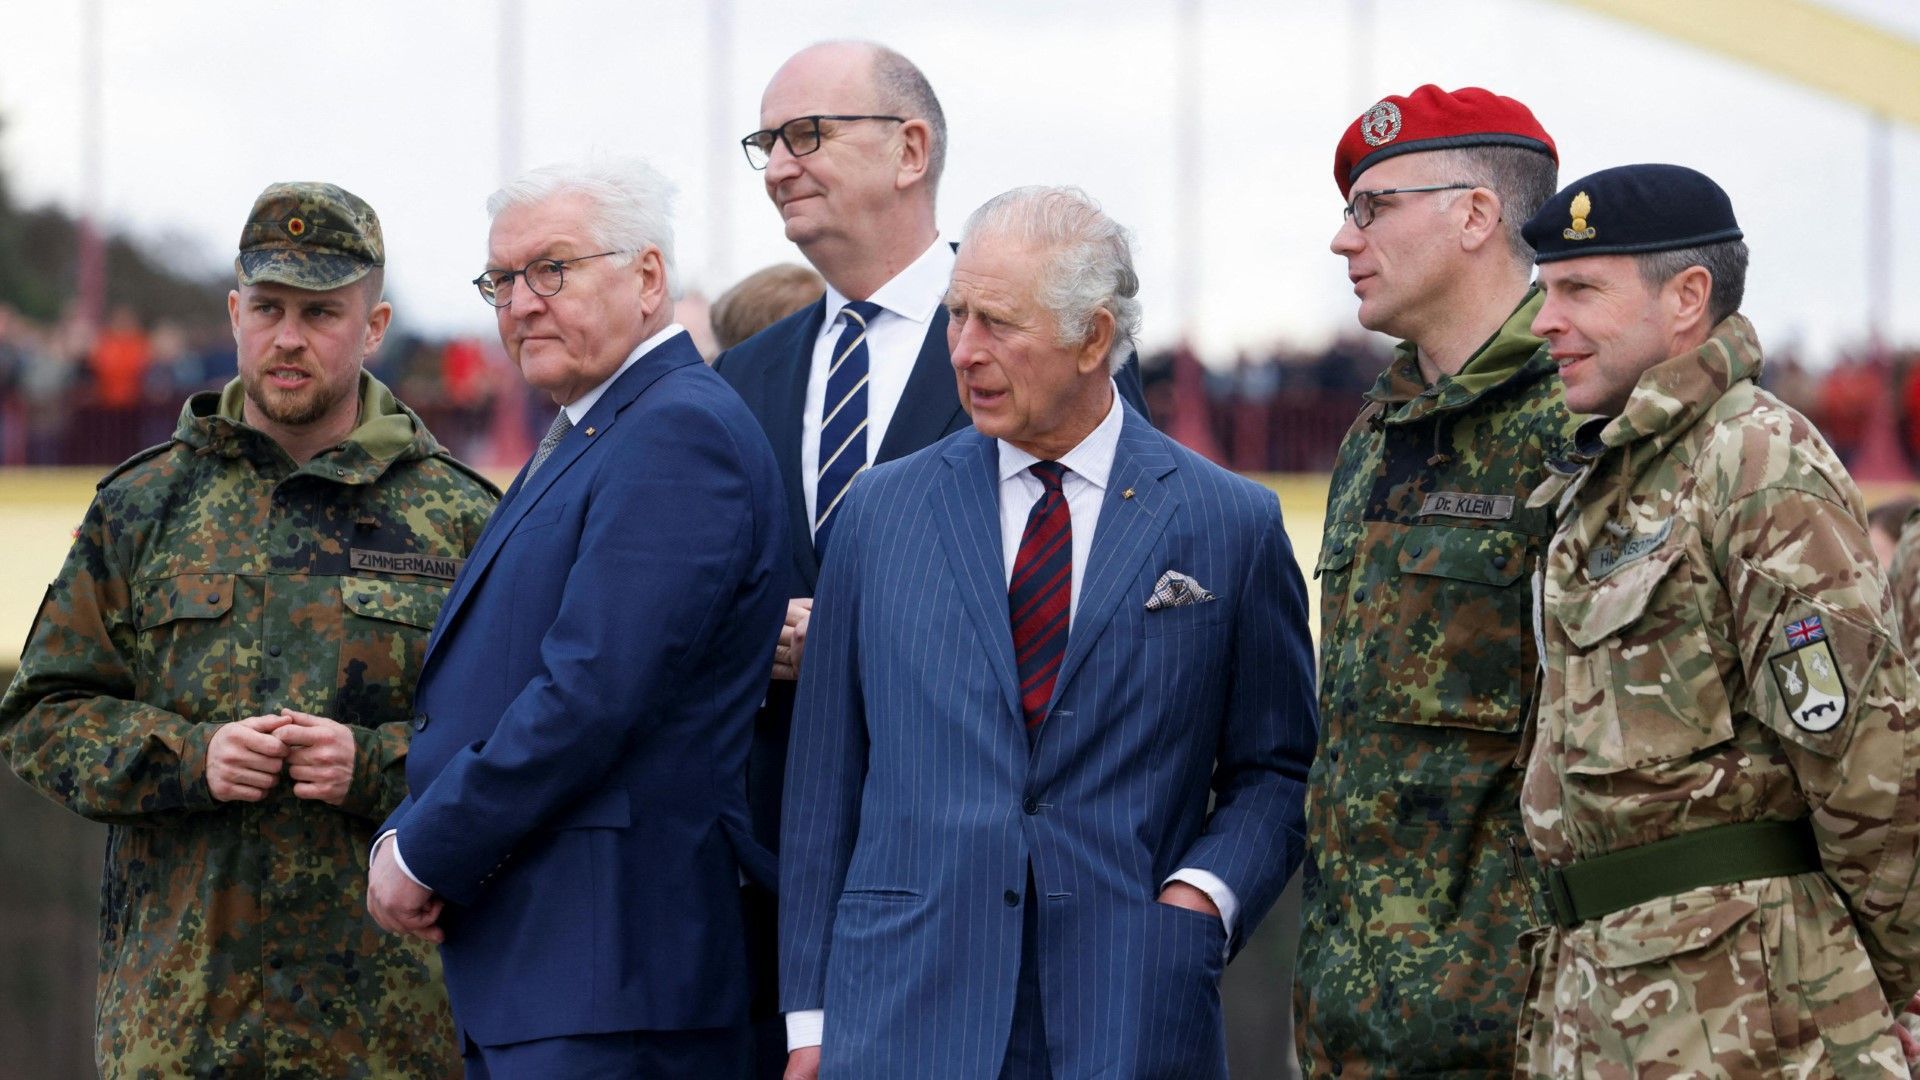 König Charles III. besucht deutsch-britische Armee-Einheit